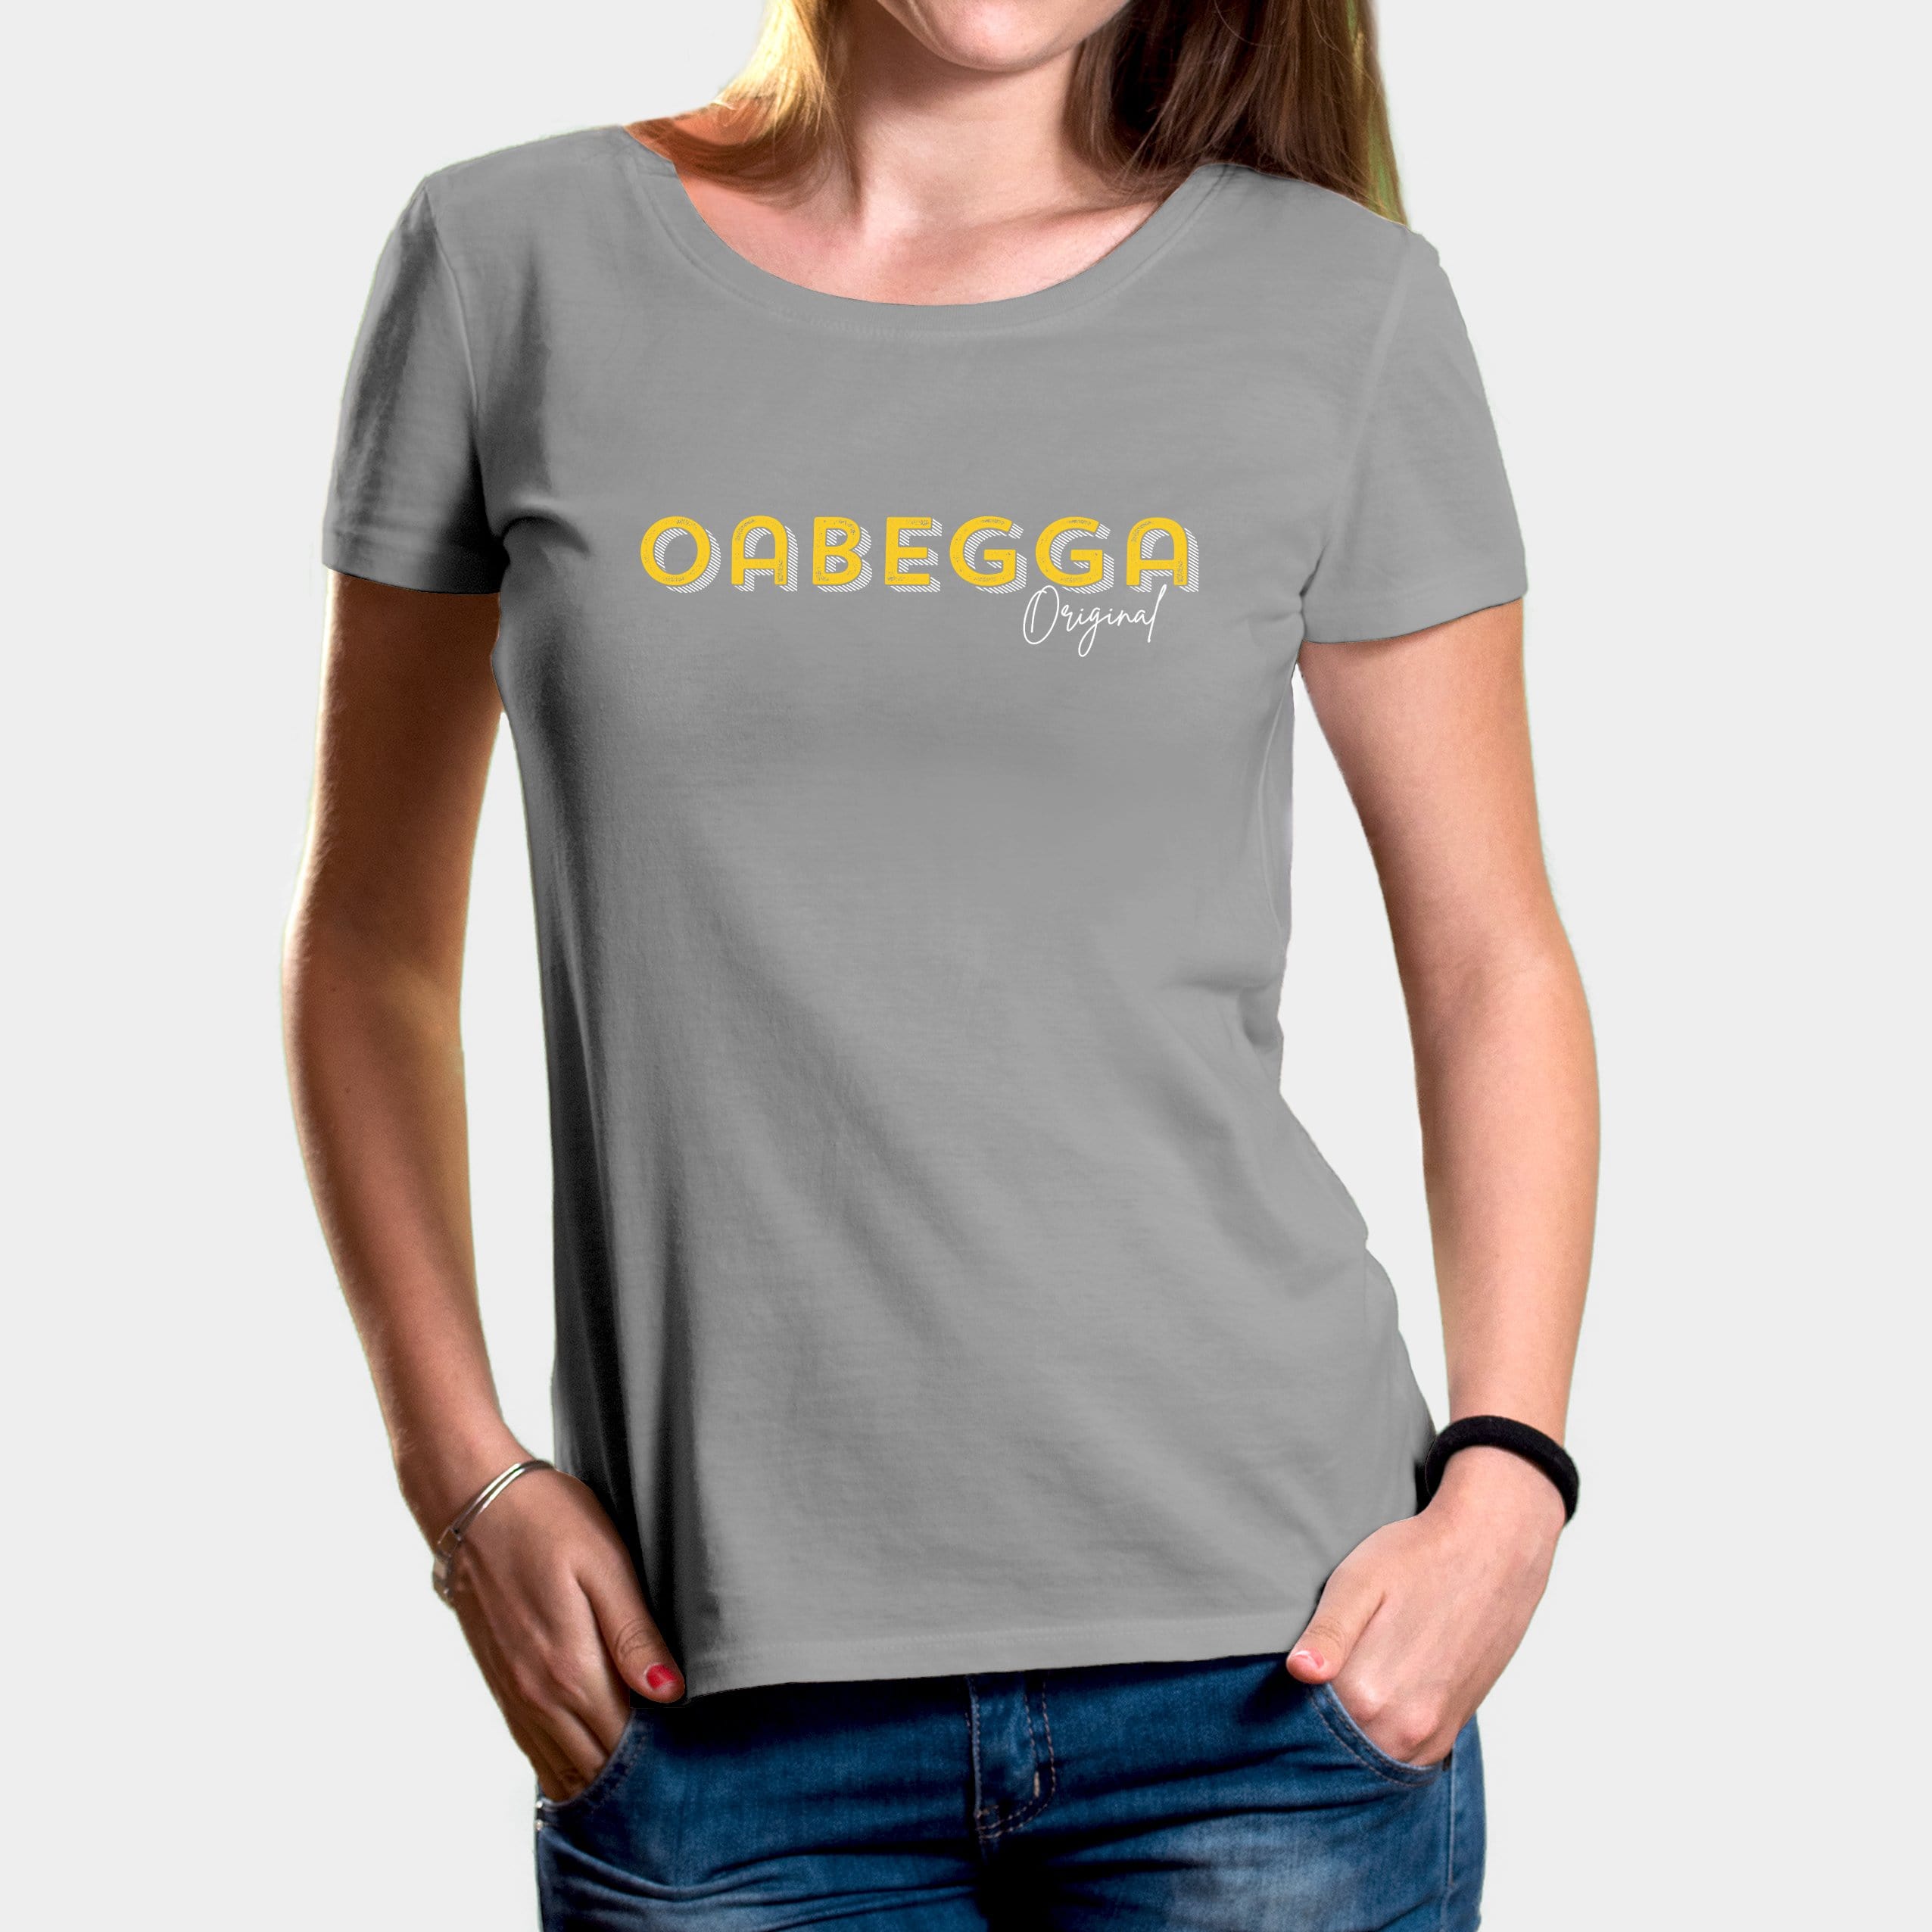 Projekt Damen-T-Shirt "Oabegga Original" XS / opal - aus nachhaltiger und fairer Produktion